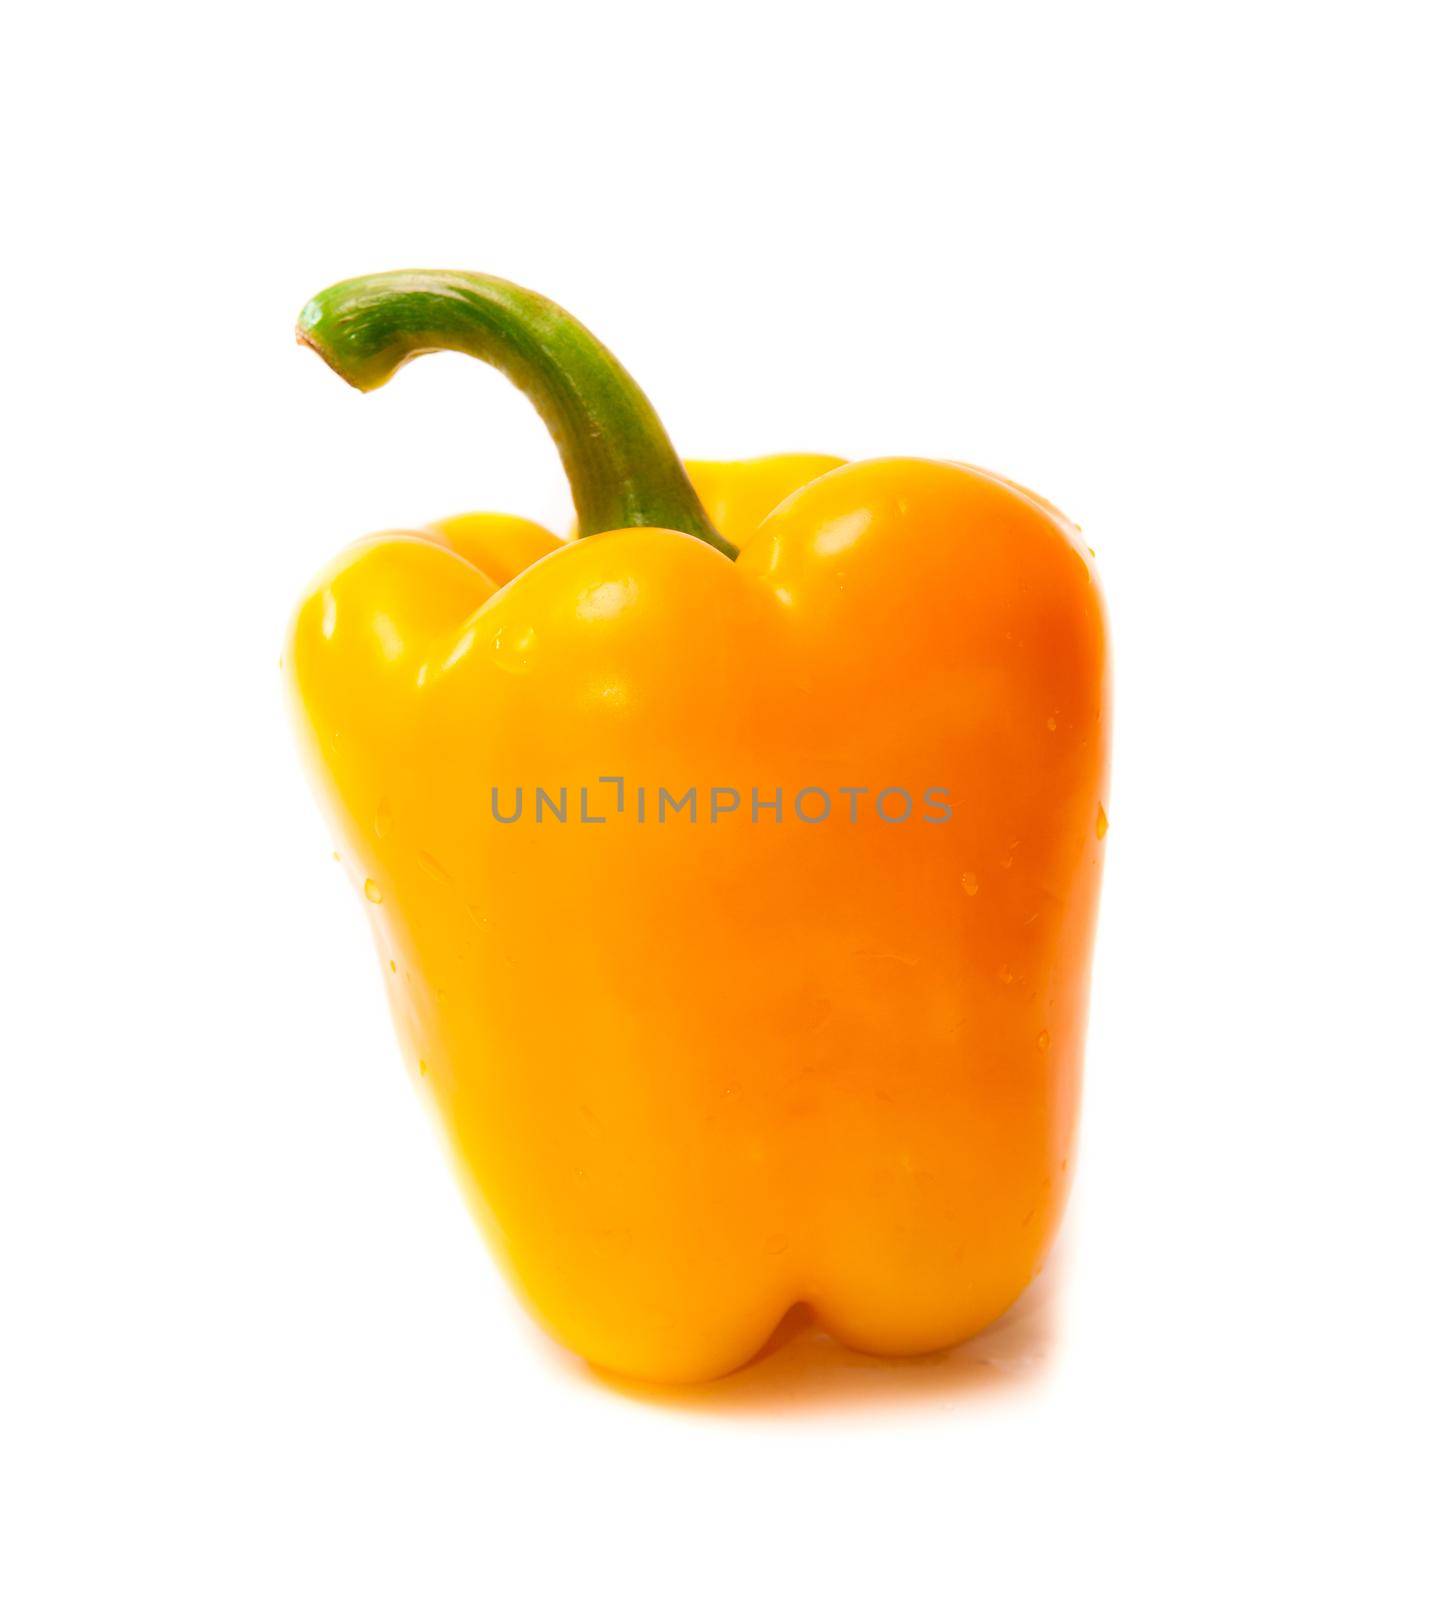 ripe pepper by tan4ikk1